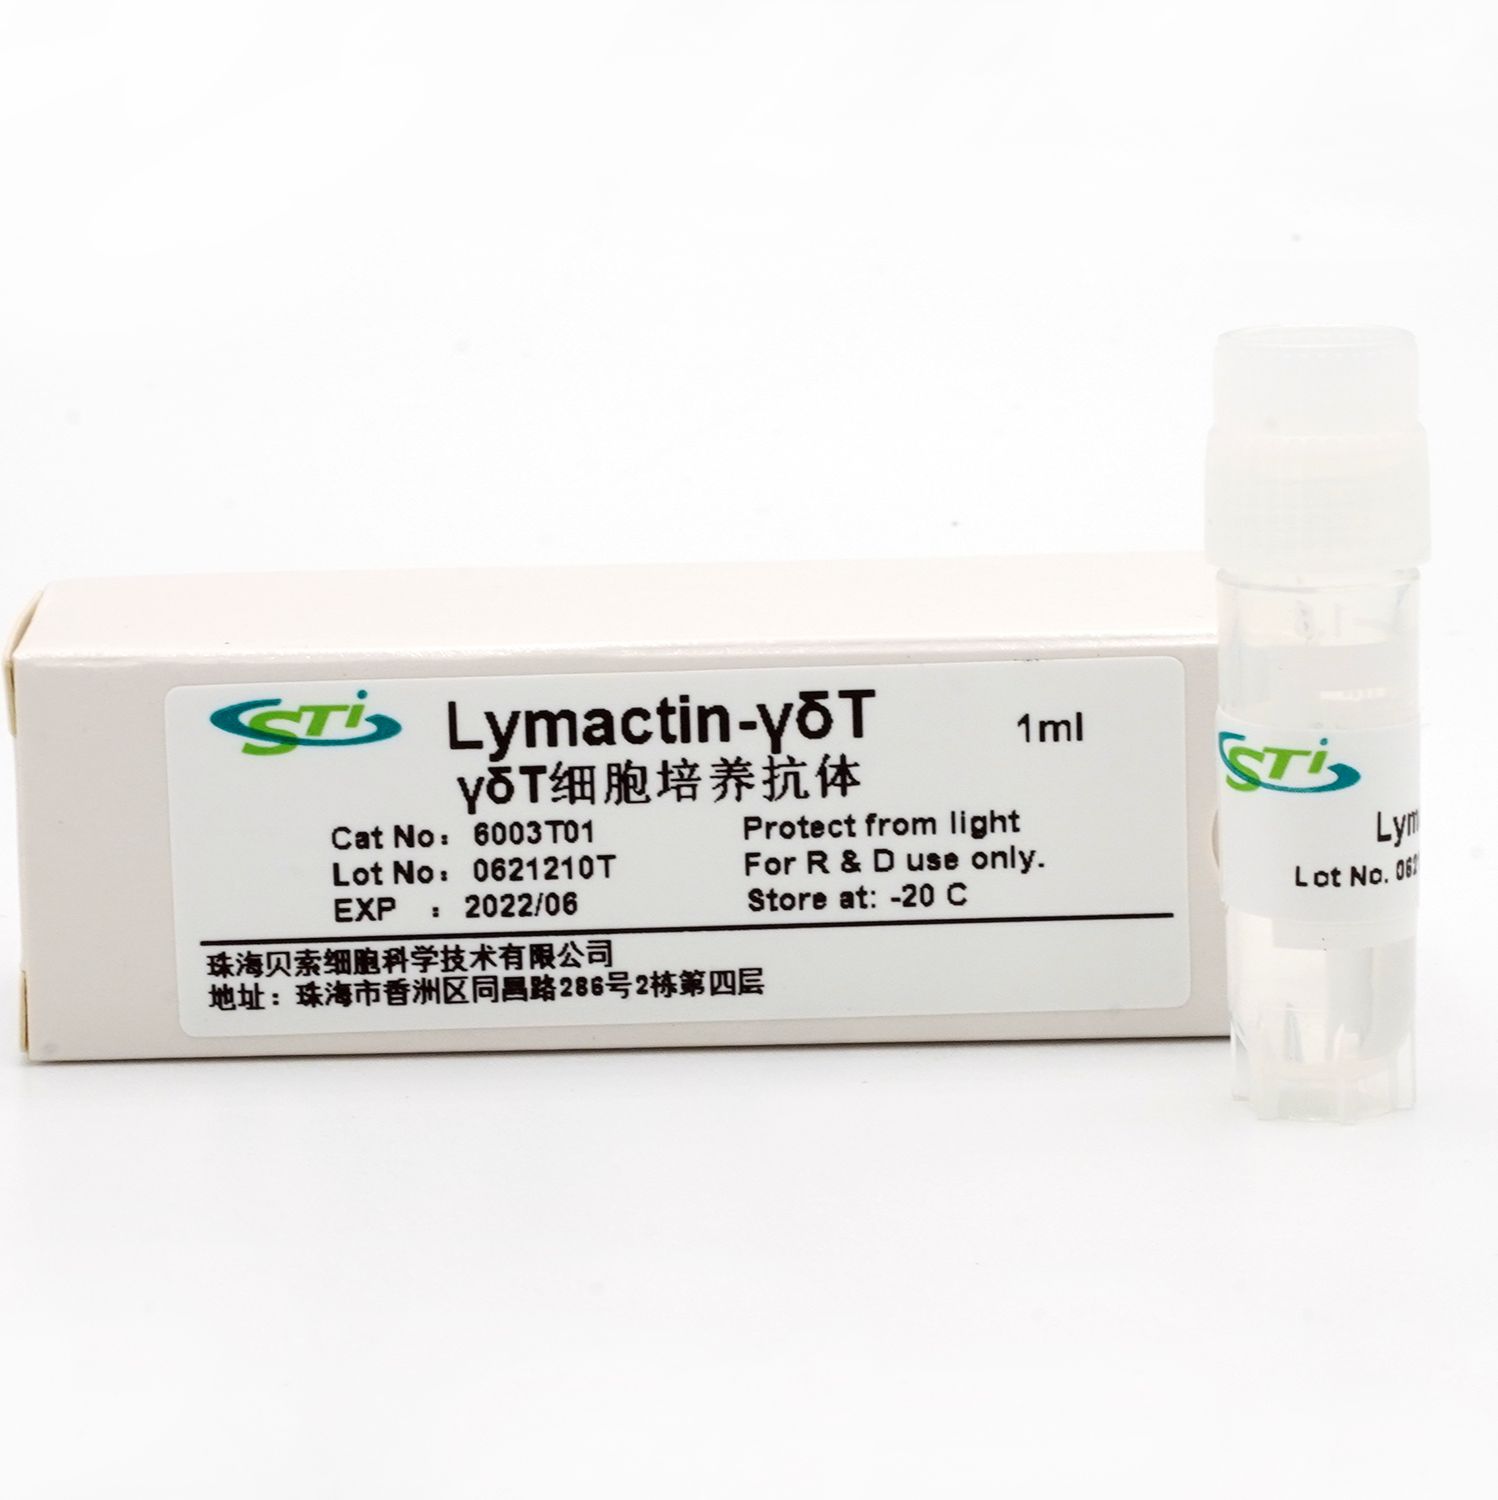 貝索細胞/CSTI | γδT細胞培養抗體Lymactin-γδT